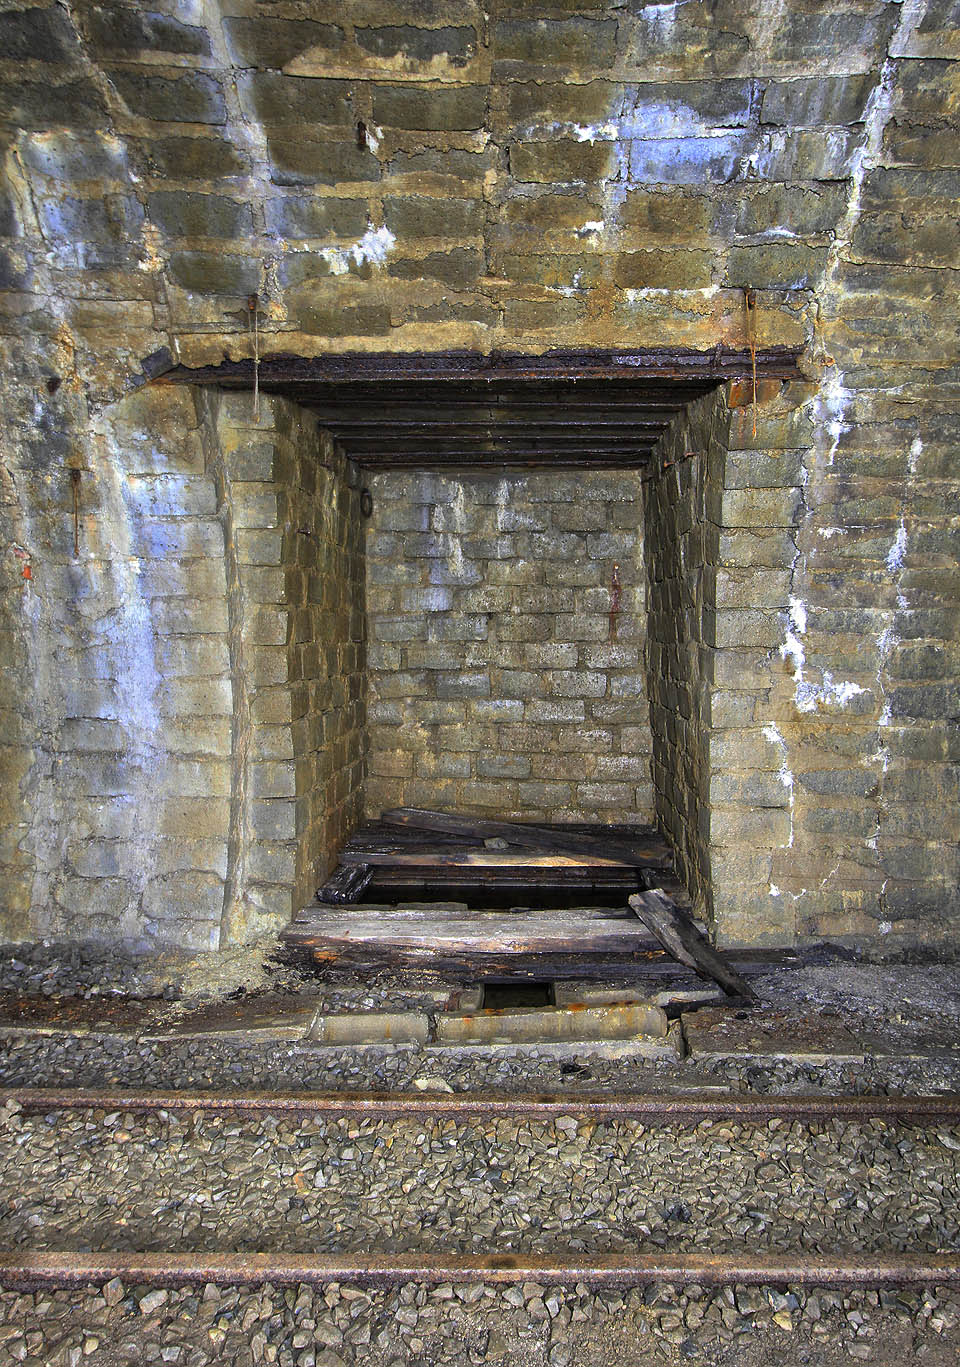 Výklenek ve stěně připomíná klasický záchranný výklenek z železničních tunelů. Zde jde ale o přístup k vodní jímce.